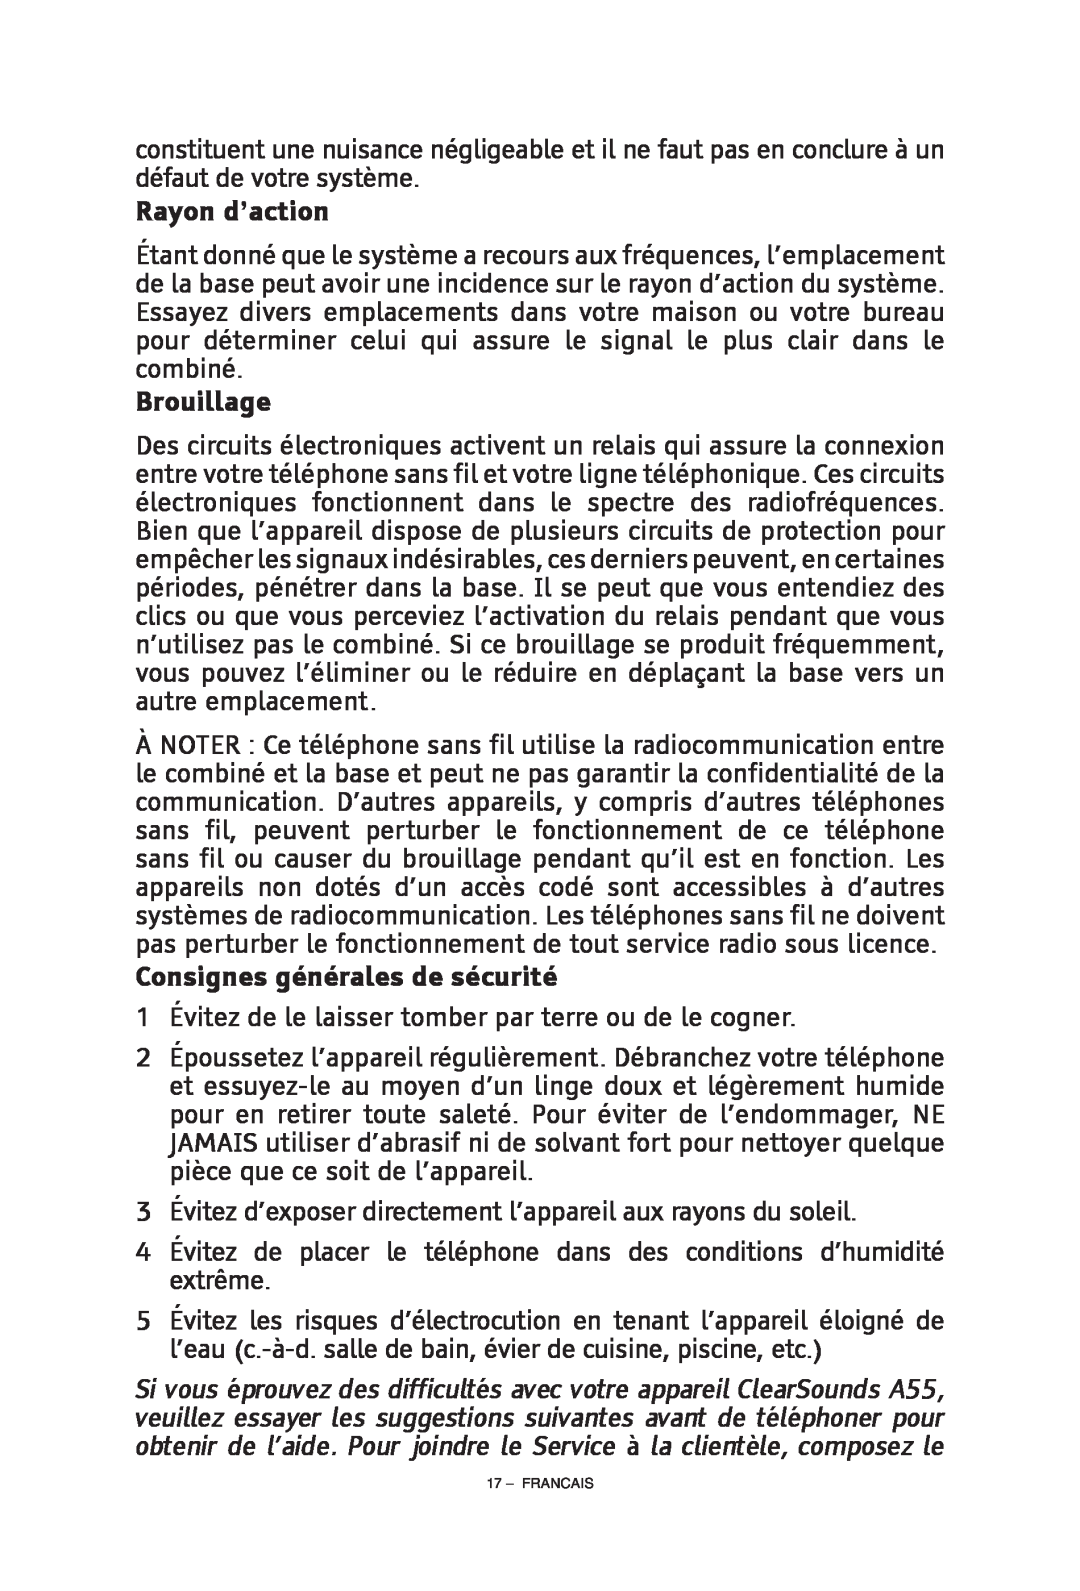 ClearSounds CS-A55 manual Brouillage, Consignes générales de sécurité, Rayon d’action 